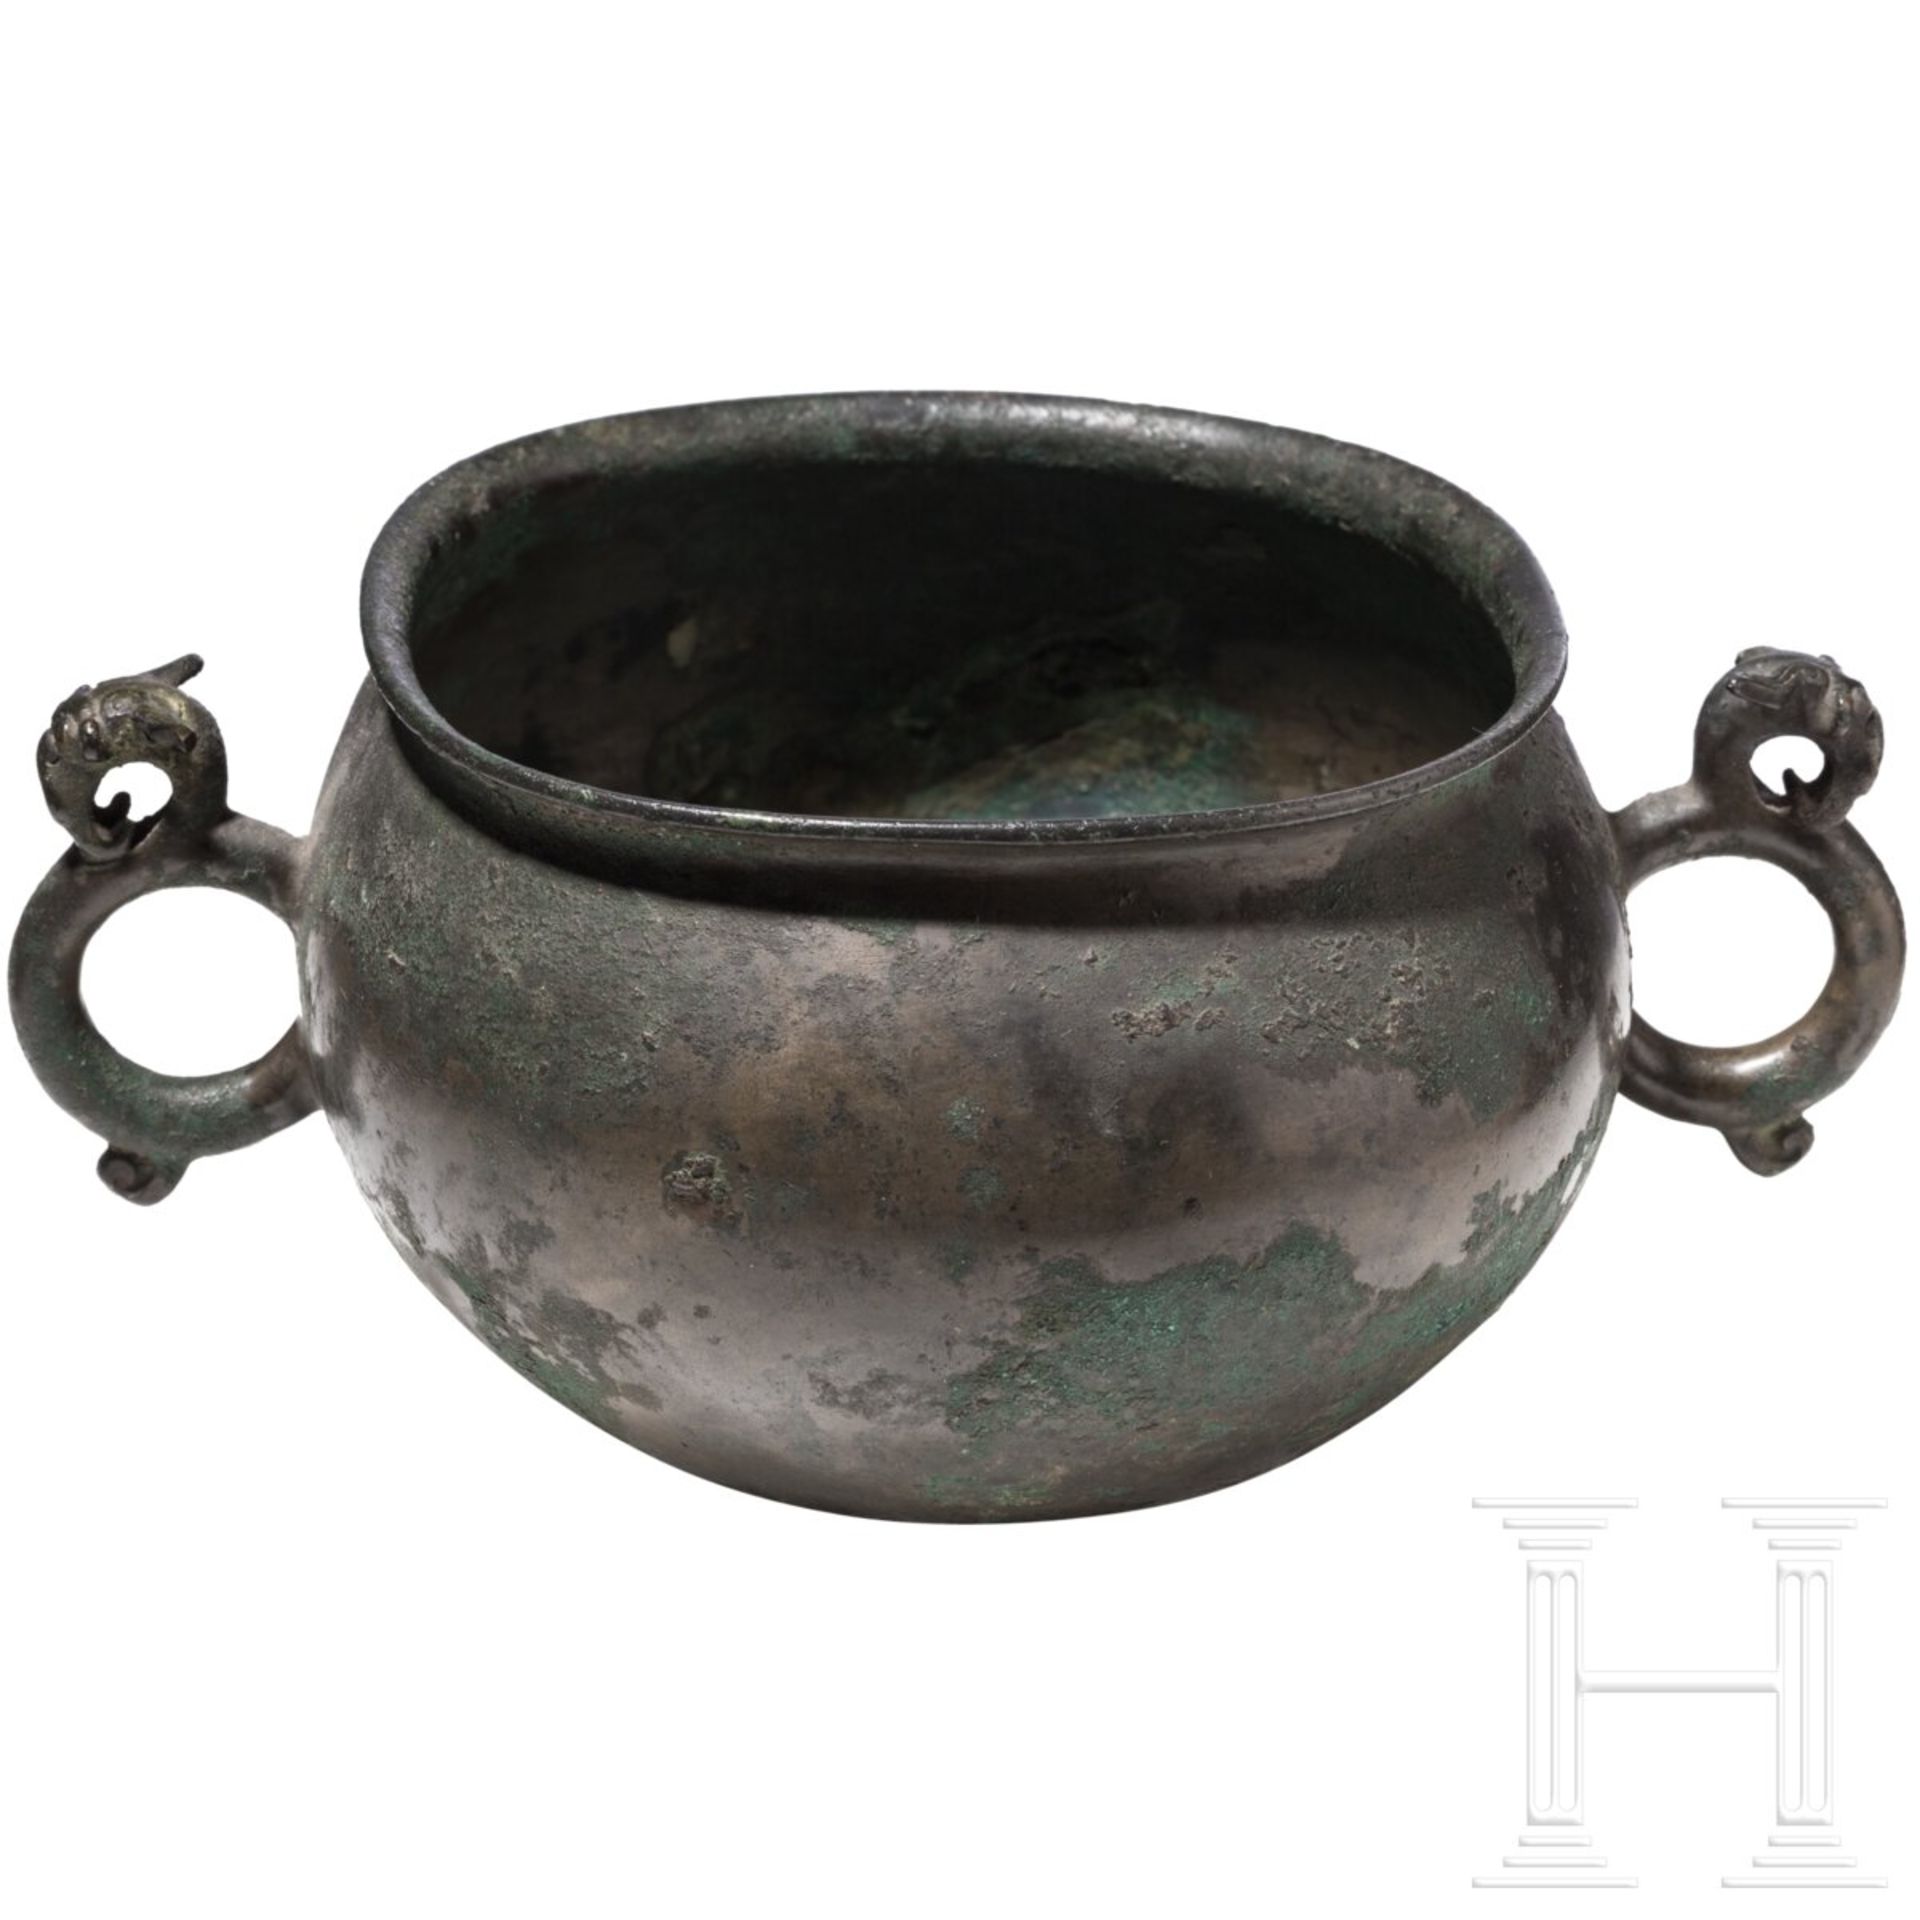 Rituelle bronzene Speiseschale (dui), China, Zeit der streitenden Reiche, 475 - 221 v. Chr. - Bild 2 aus 4